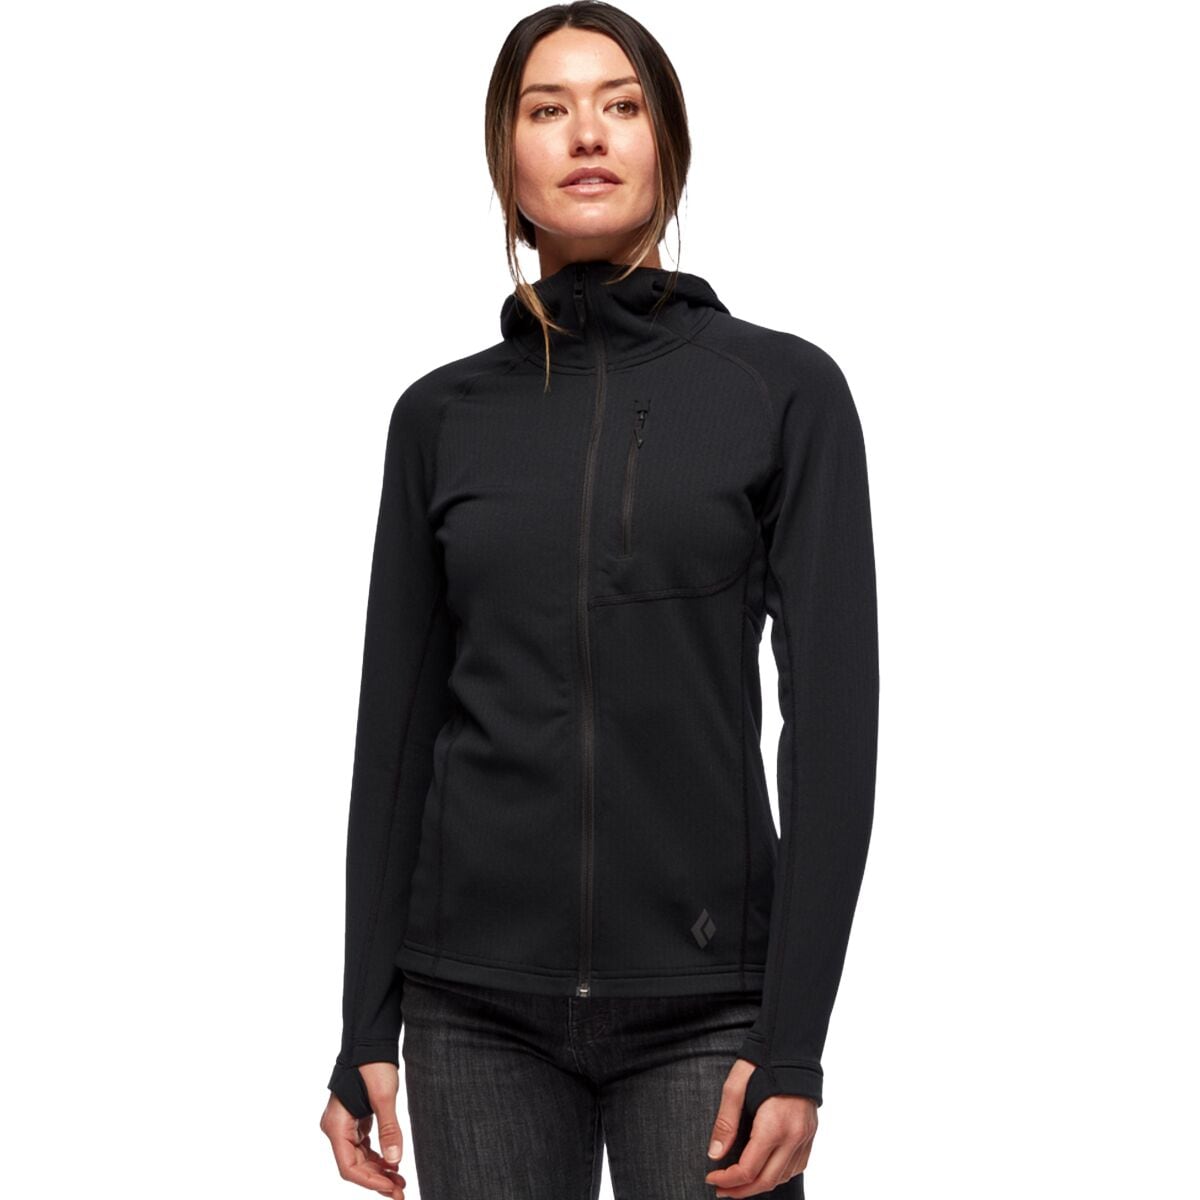 Coefficient Fleece Hooded Jacket - Women